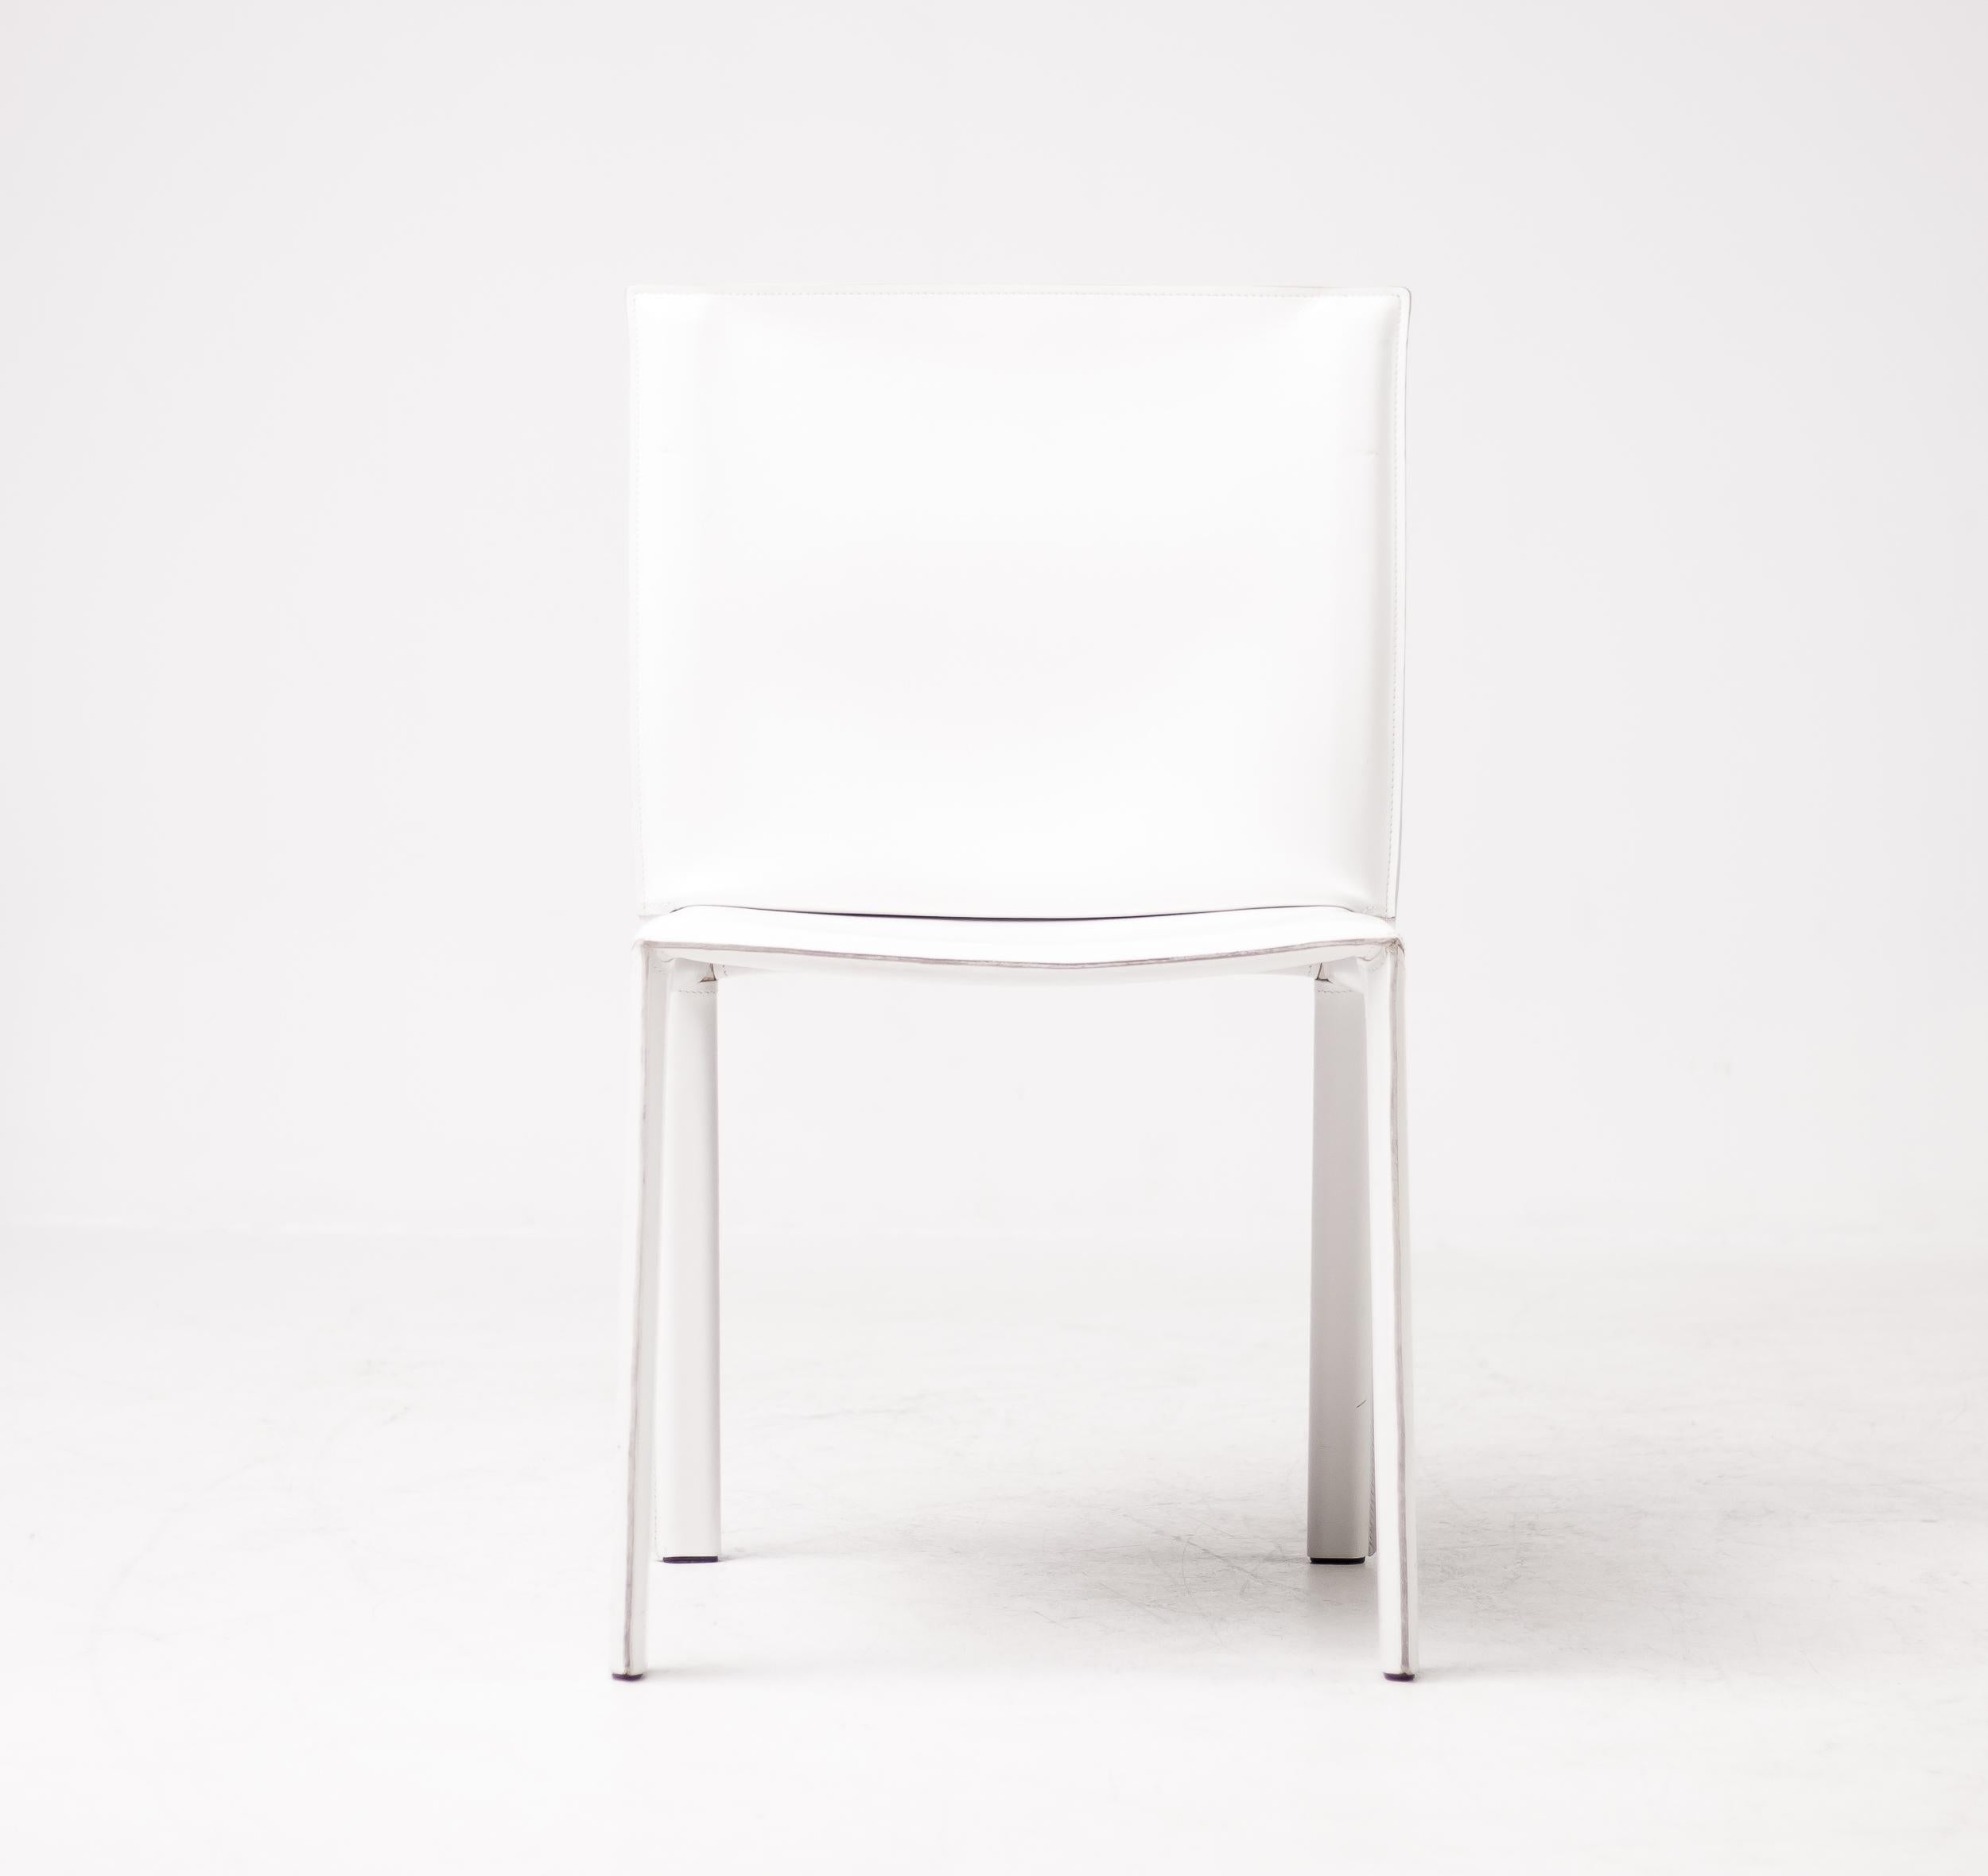 Magnifique ensemble de 8 chaises Enrico Pellizzoni Pasqualina conçues par Grassi & Bianchi. Ces chaises sont recouvertes d'un magnifique cuir blanc pleine fleur. Les chaises ont été achetées en 2010 et sont méticuleusement entretenues. 
Ils sont en